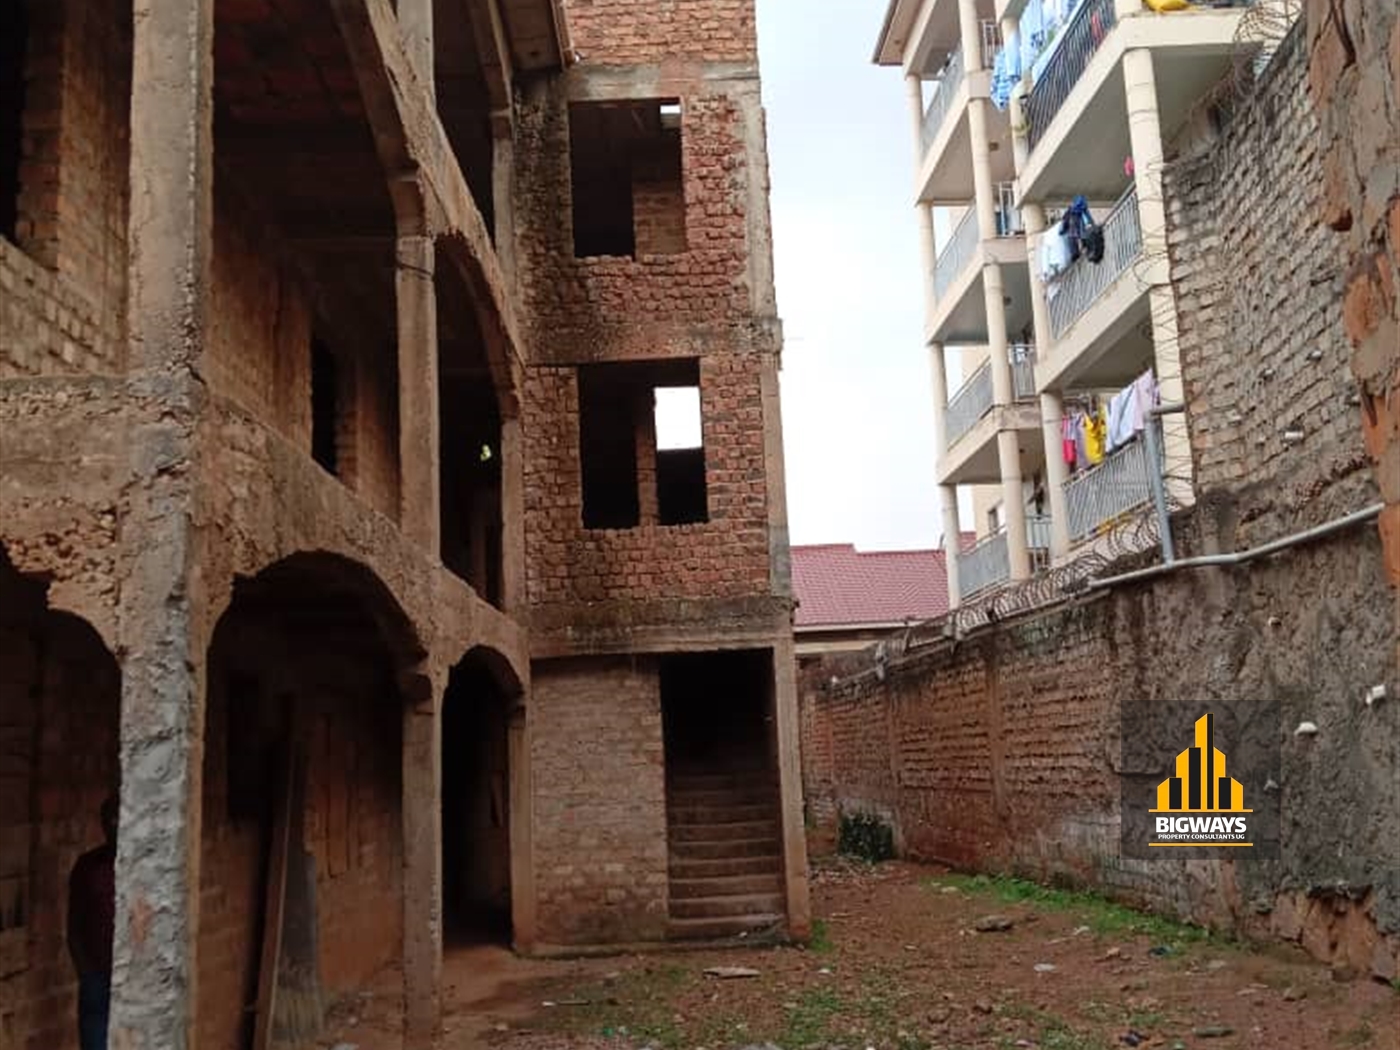 Apartment block for sale in Buziga Kampala